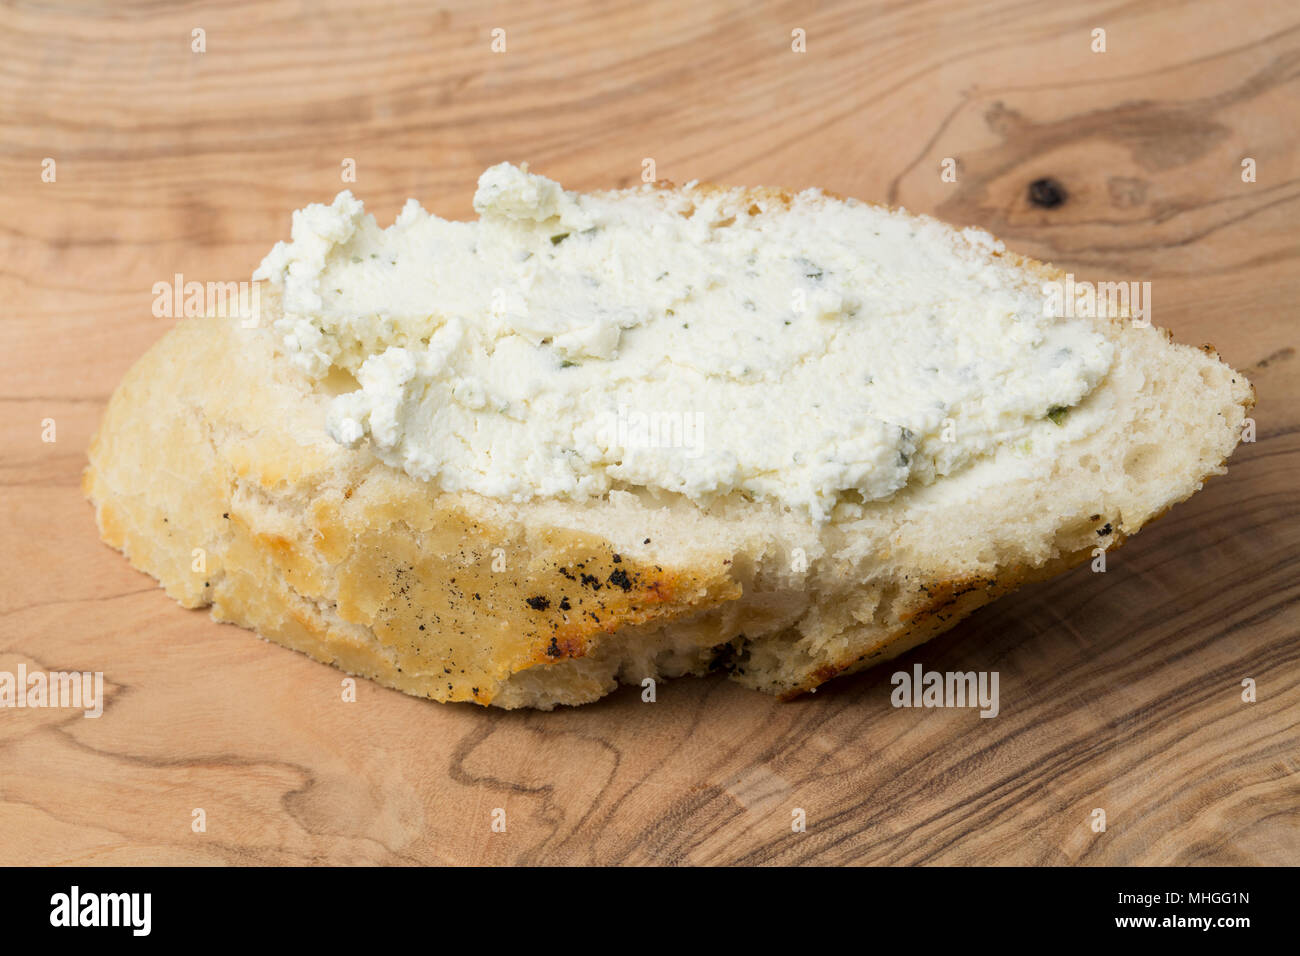 Französische Boursin Käse gekauft von einem Supermarkt in Großbritannien verteilt auf einer Scheibe Weißbrot. Boursin ist ein voll fett Weichkäse aus Kuhmilch flav gemacht Stockfoto